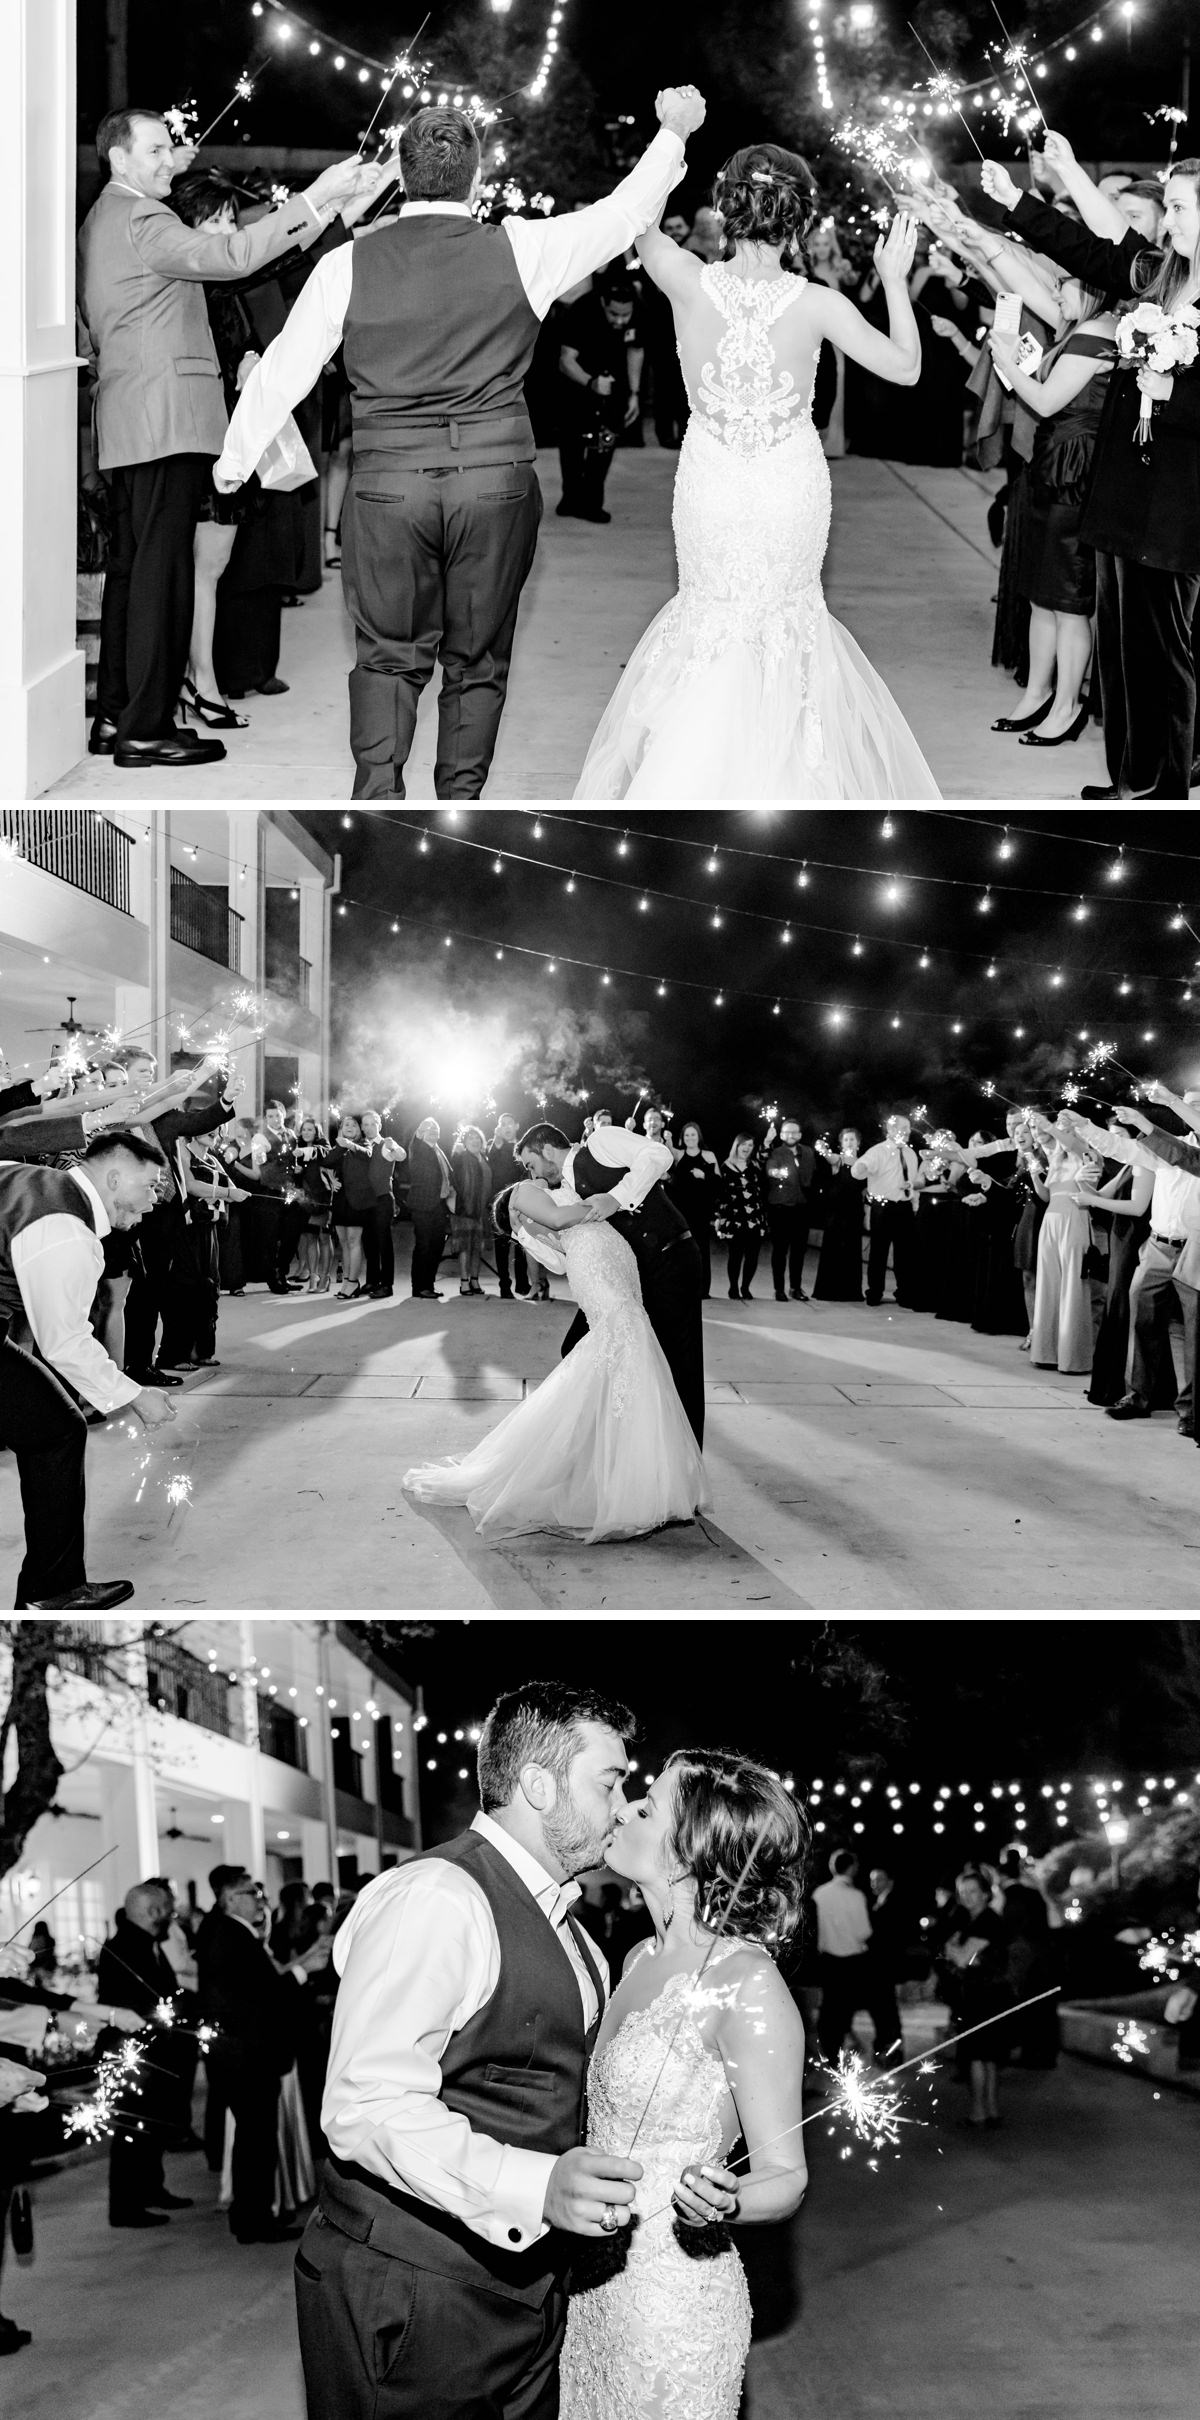 A Burgundy and Navy Wedding at Kendall Plantation in Boerne, TX by Dawn Elizabeth Studios, San Antonio Wedding Photographer